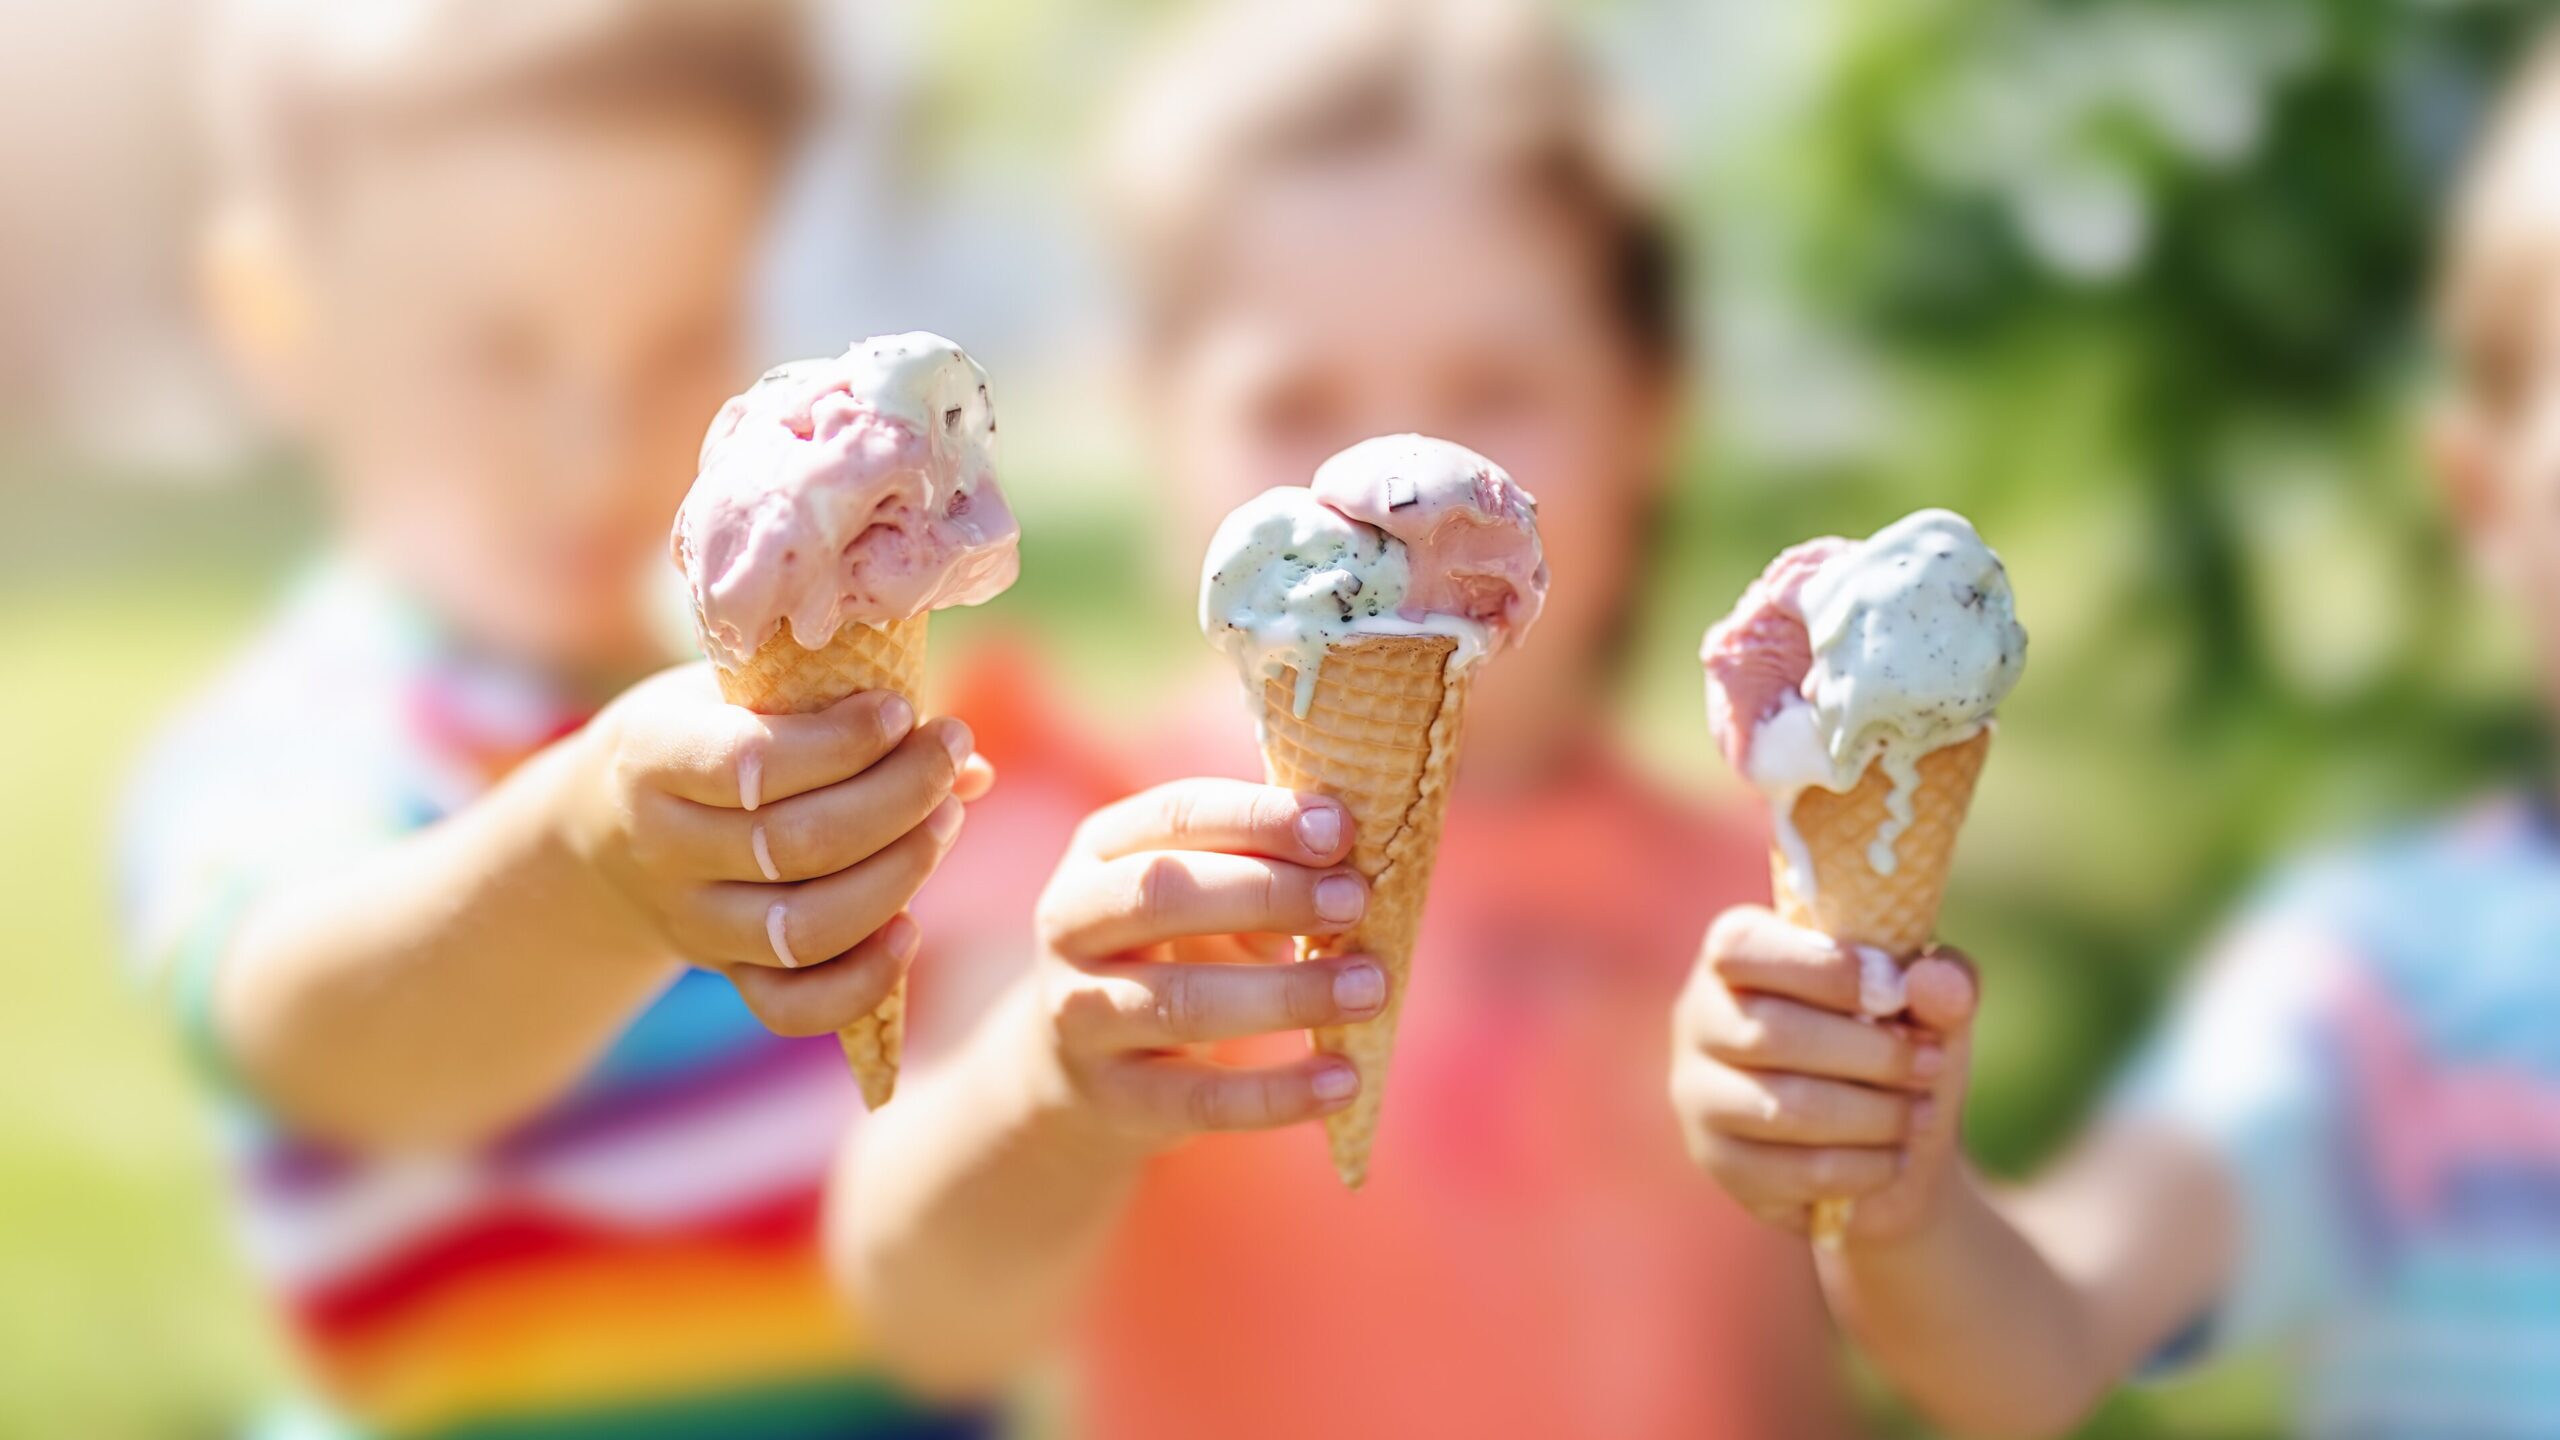 Kids holding melting Ice cream